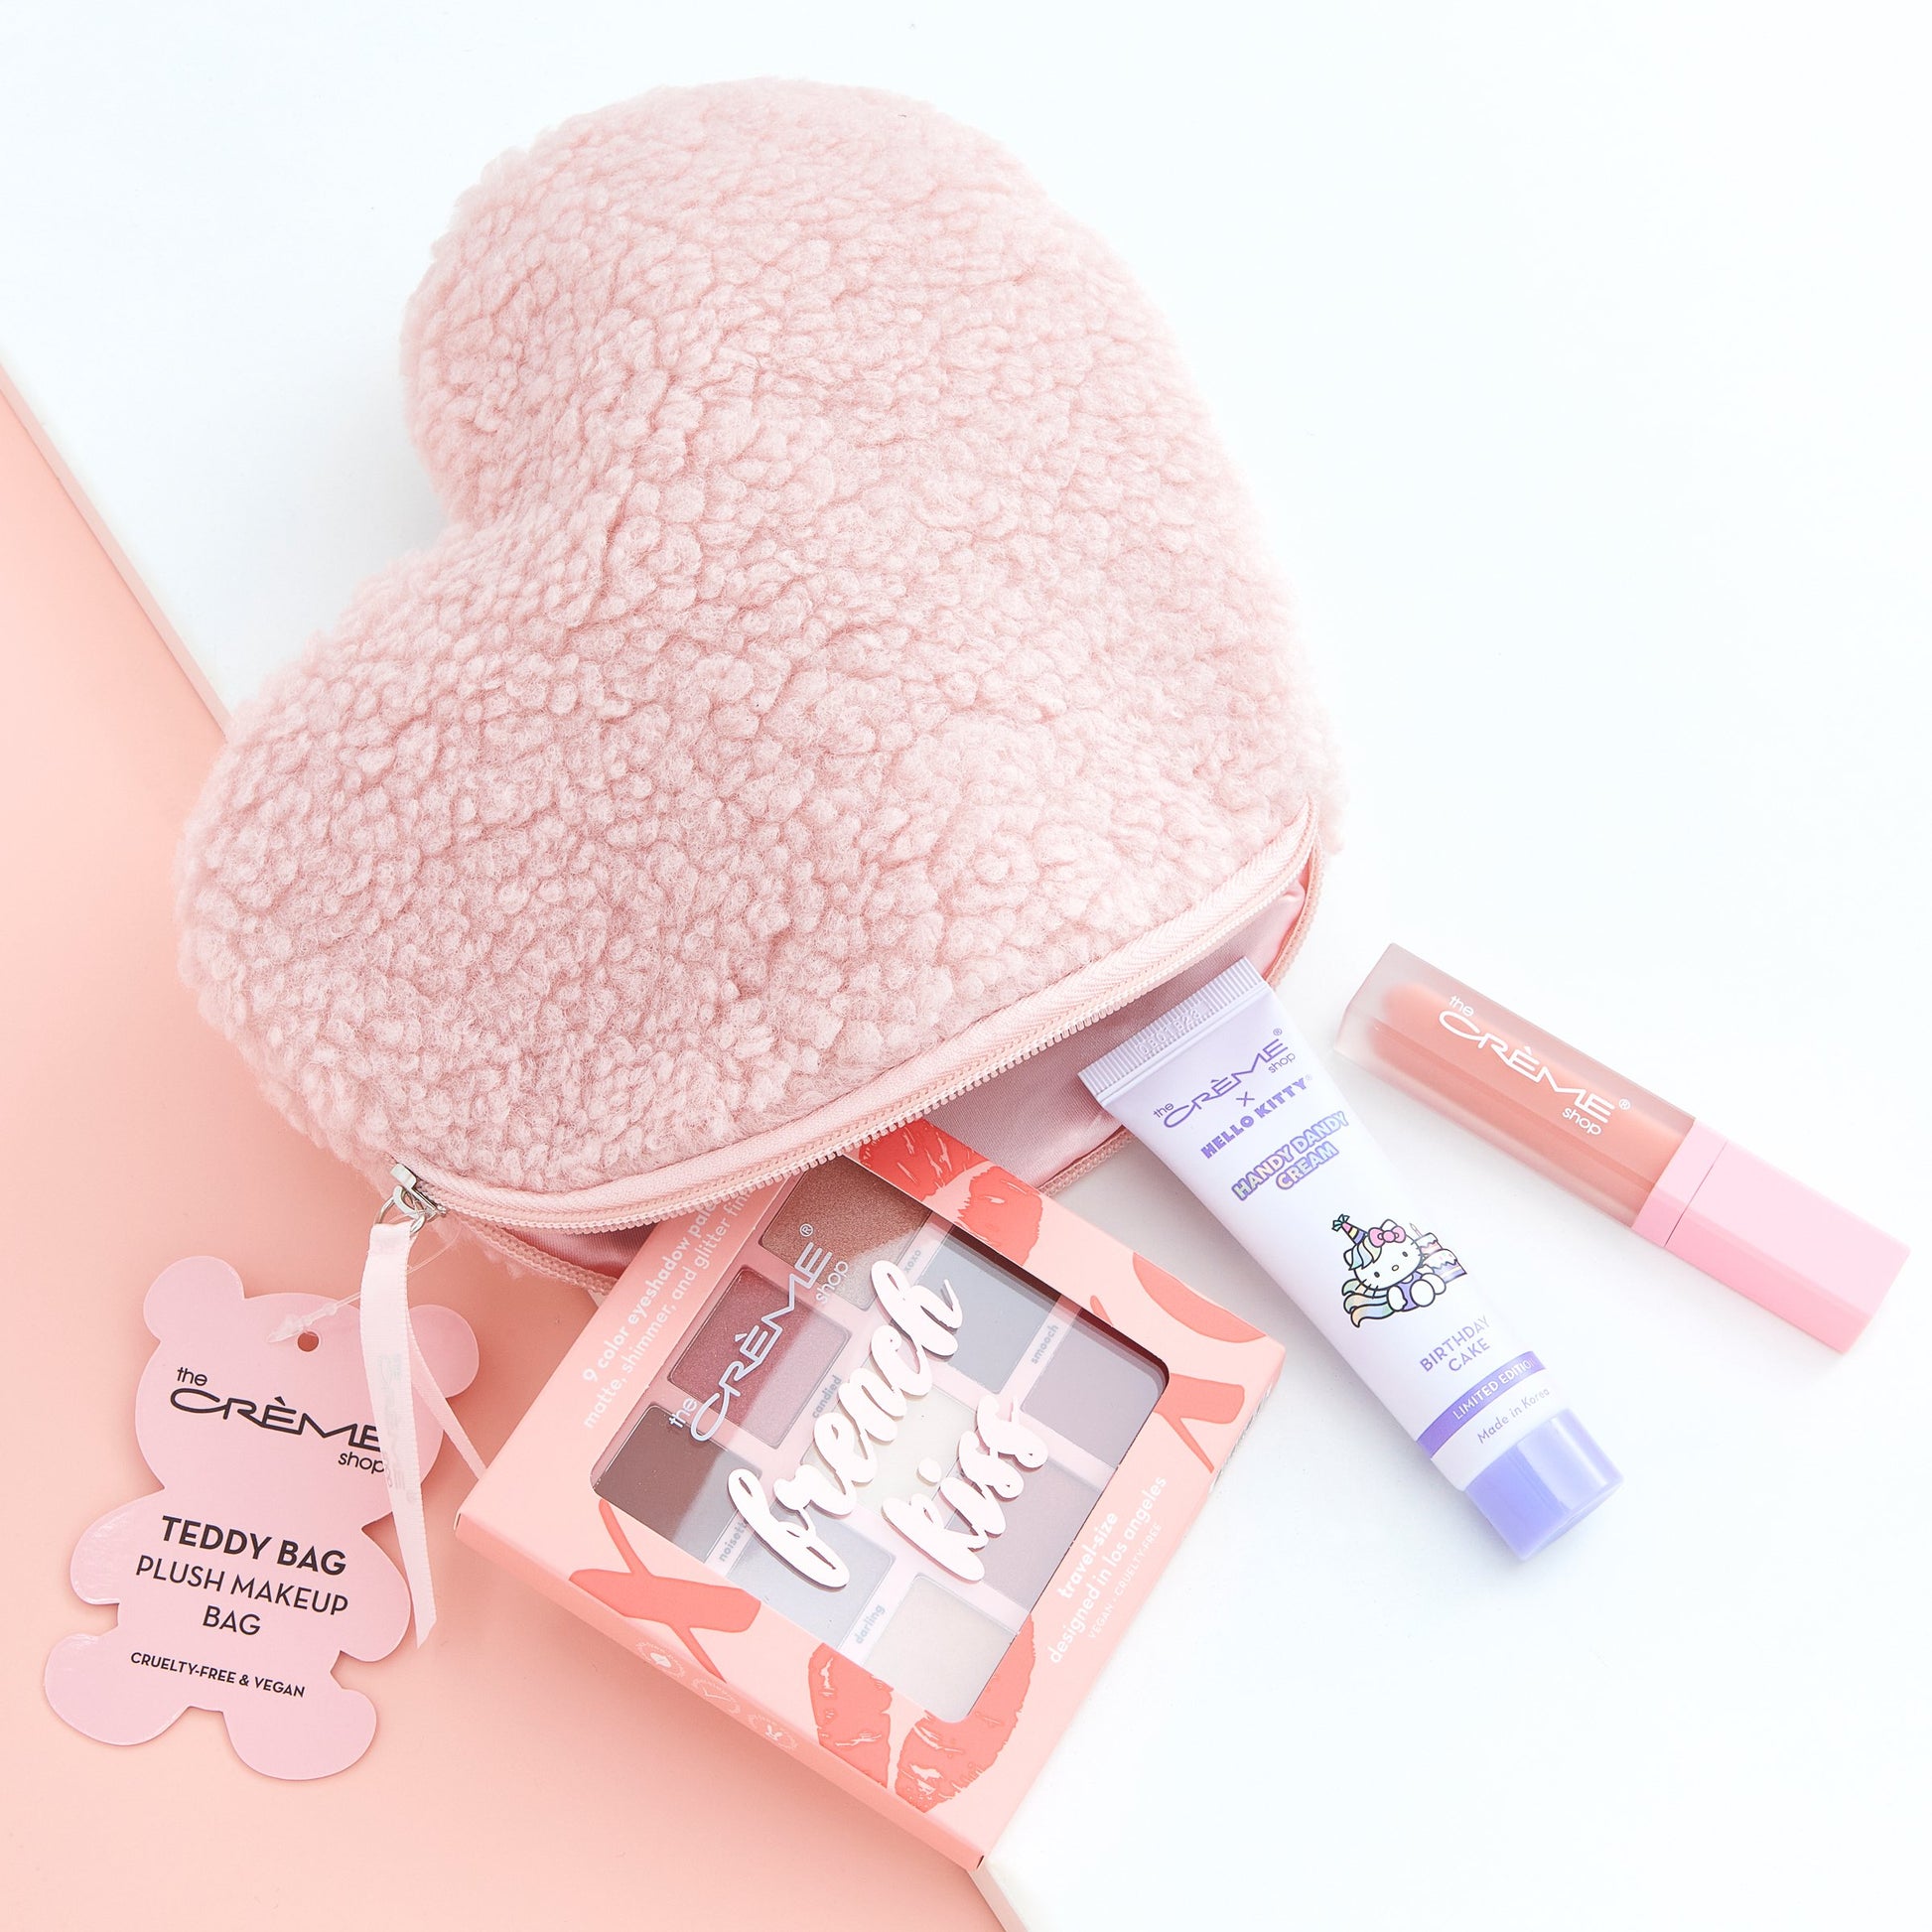 Set of 2 The Creme Shop Teddy Bag Plush Makeup Pouch - Faux Love Pink & Blue